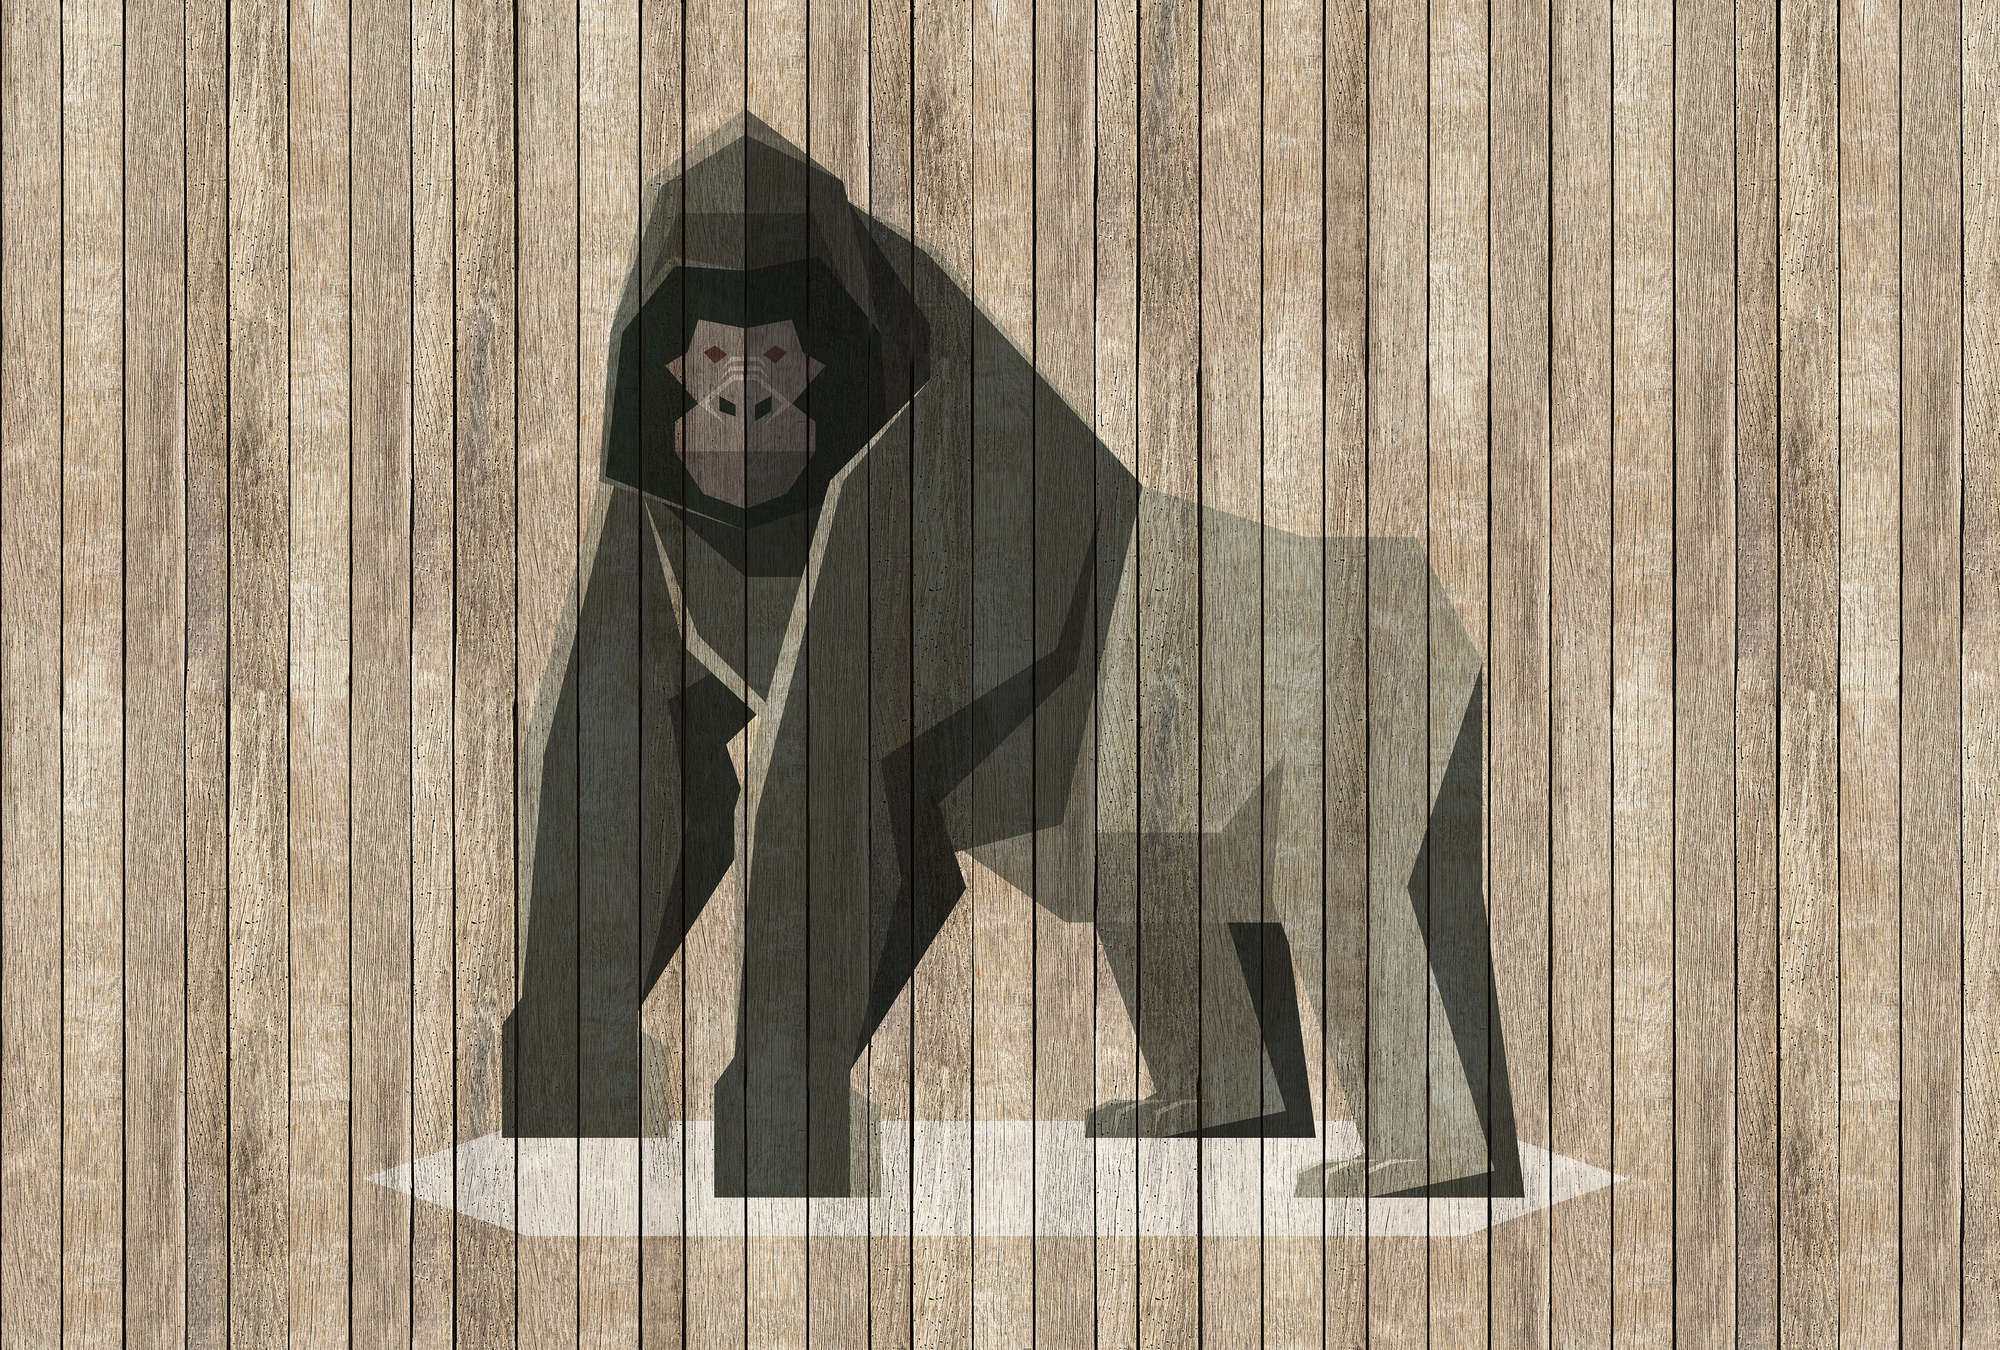             Born to Be Wild 3 - Fototapete Gorilla auf Bretterwand - Holzpaneele Breit – Beige, Braun | Perlmutt Glattvlies
        